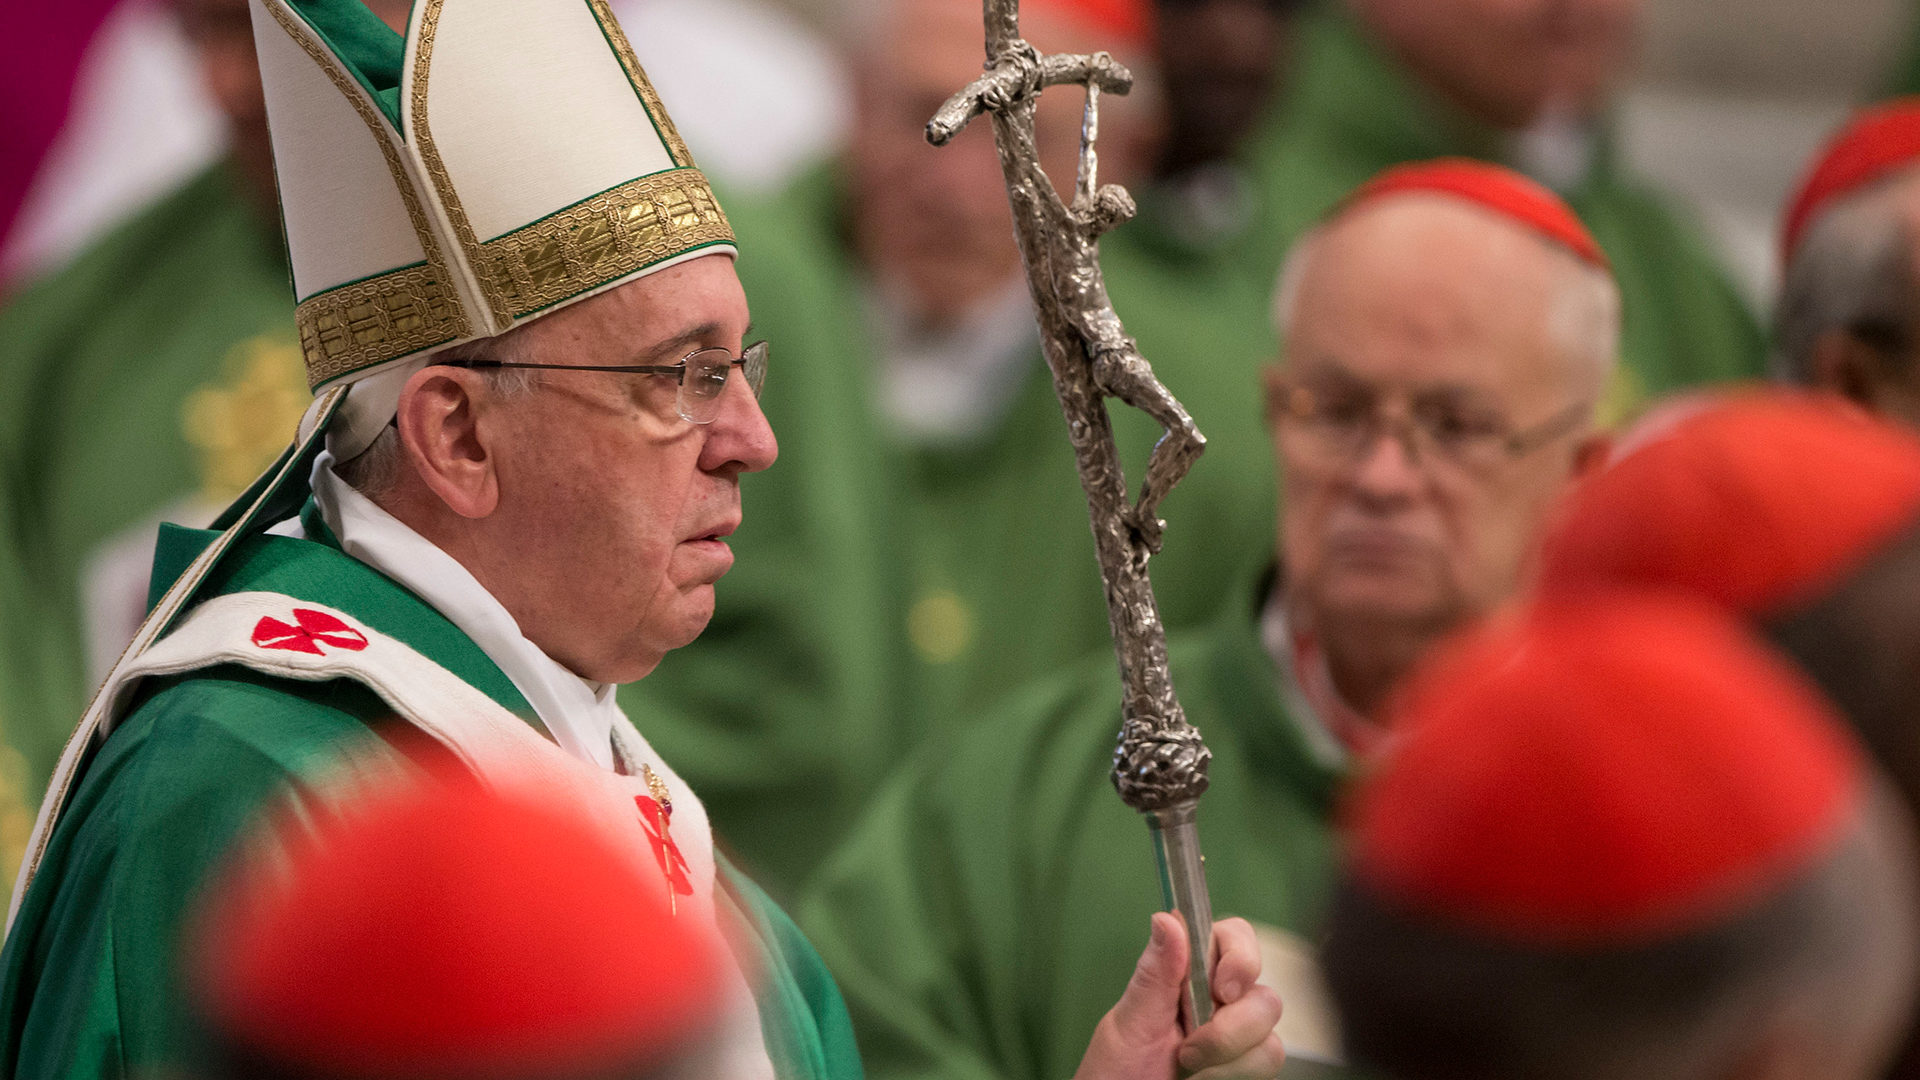 Le pape François ne prolongera pas systématiquement les mandats curiaux au-delà de 5 ans. (Photo: flickr/catholicism/CC BY-NC-SA 2.0)